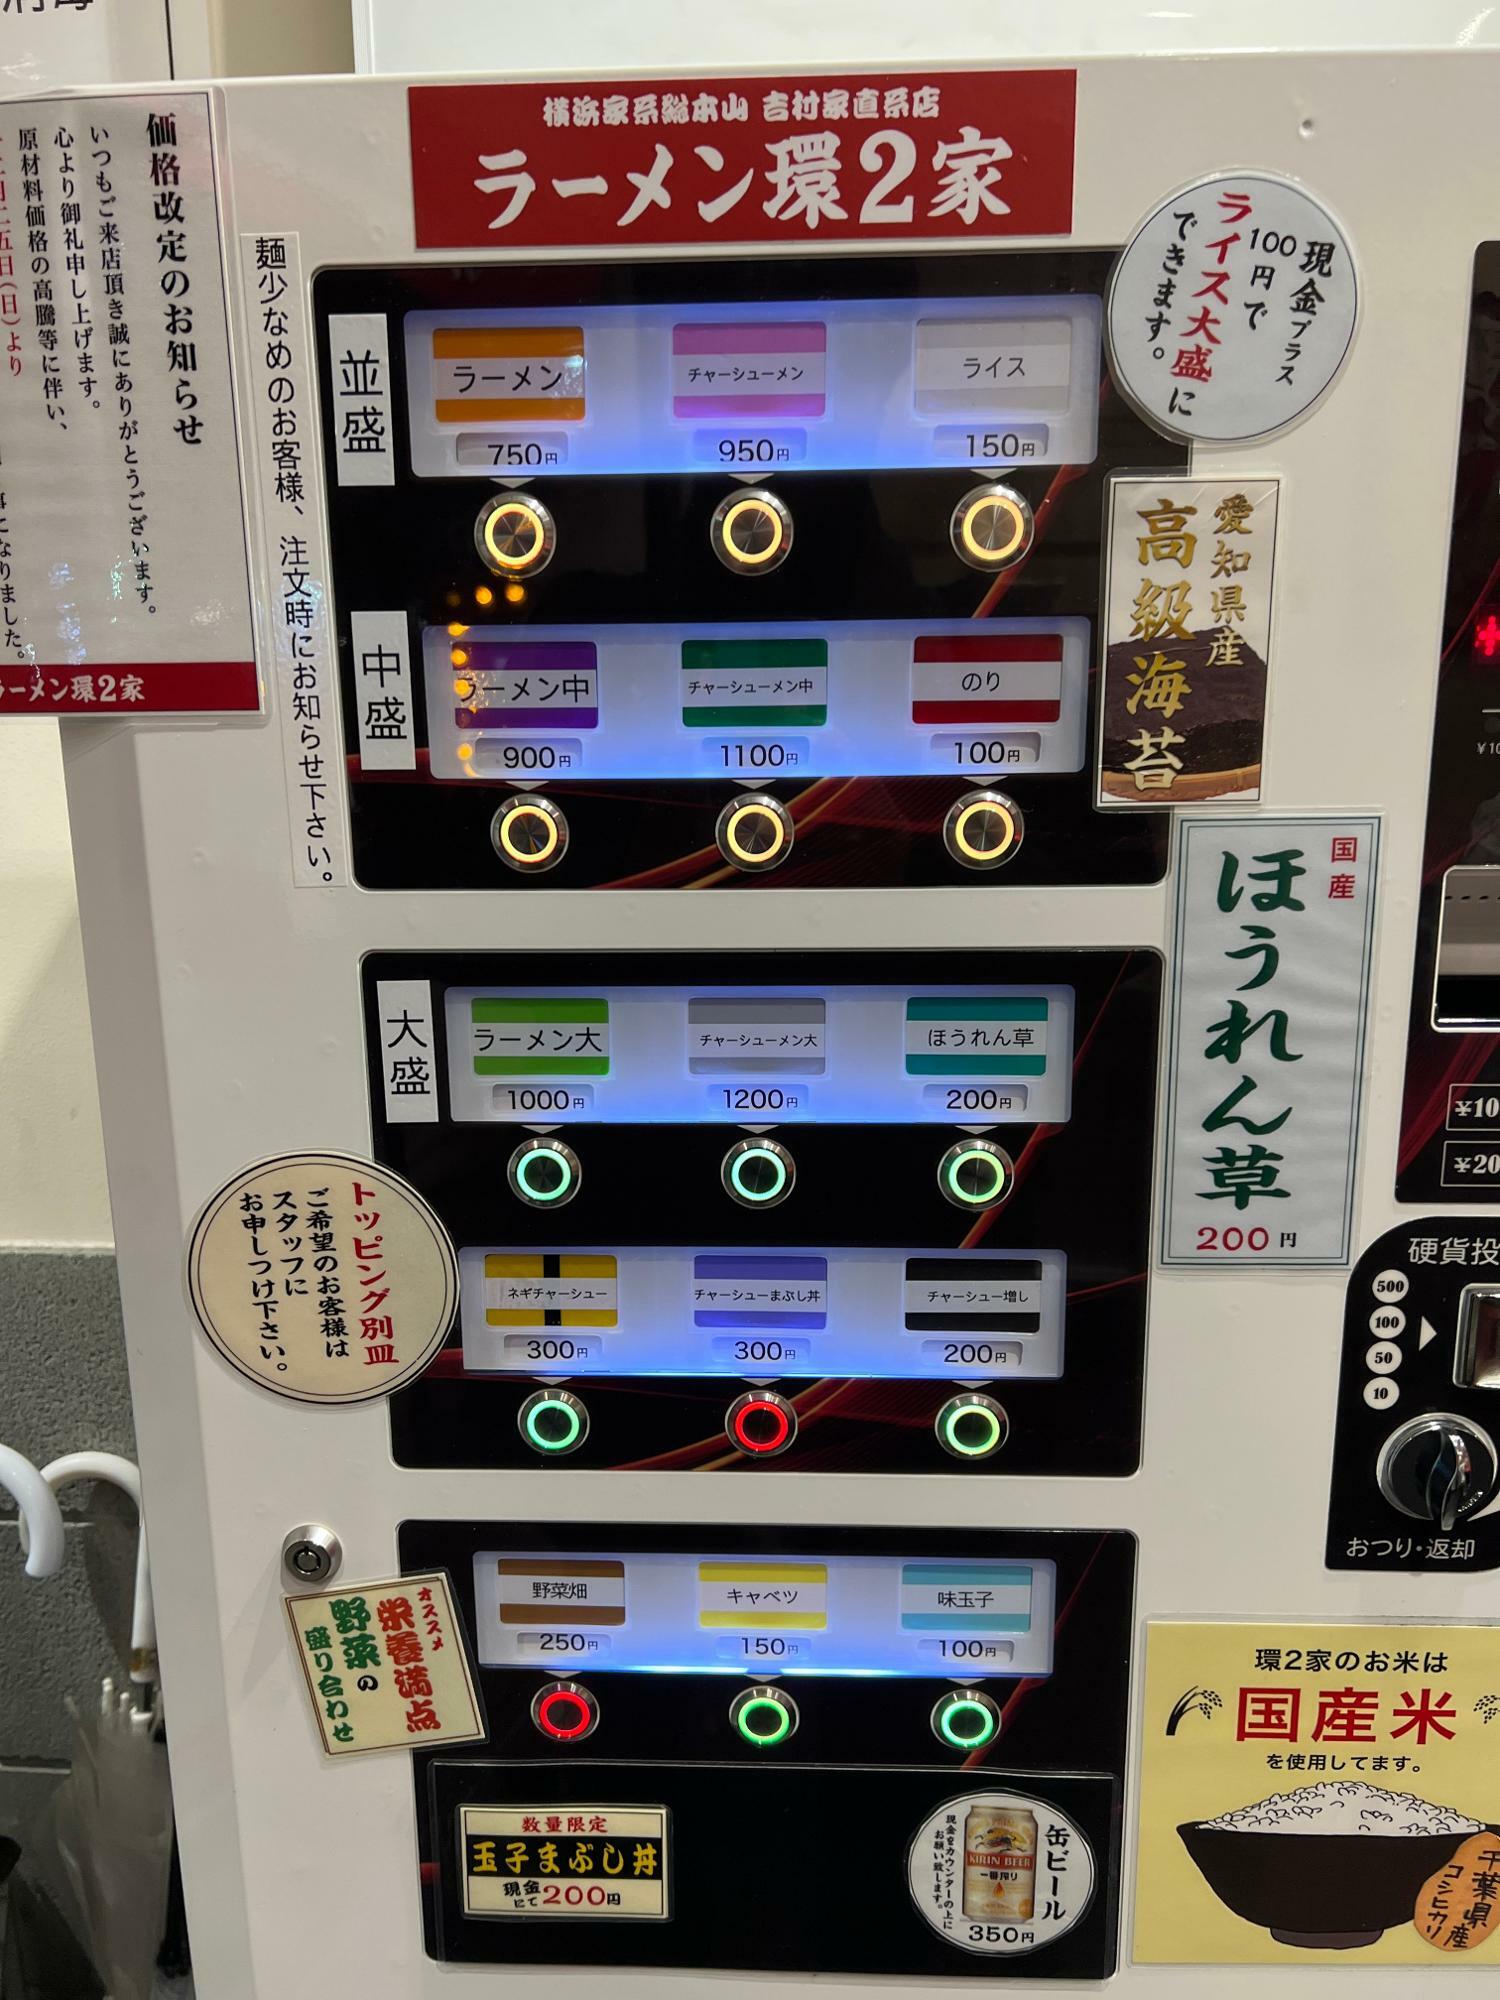 最近、ラーメン二郎でも見かけるタイプの最新券売機ですね。